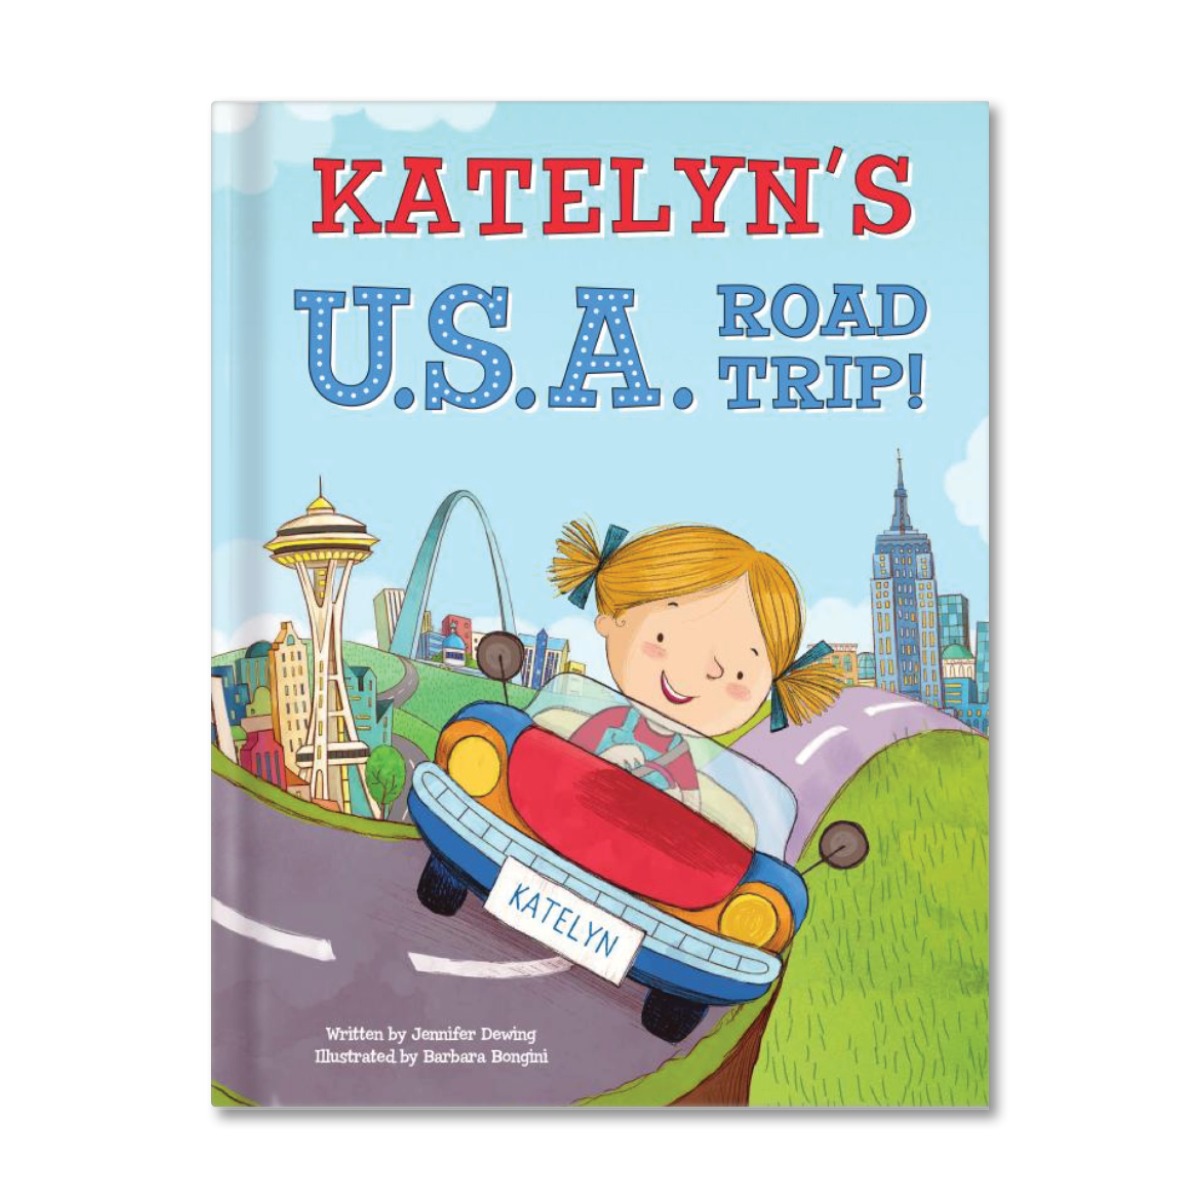 My U.S.A. Road Trip Personalized Book